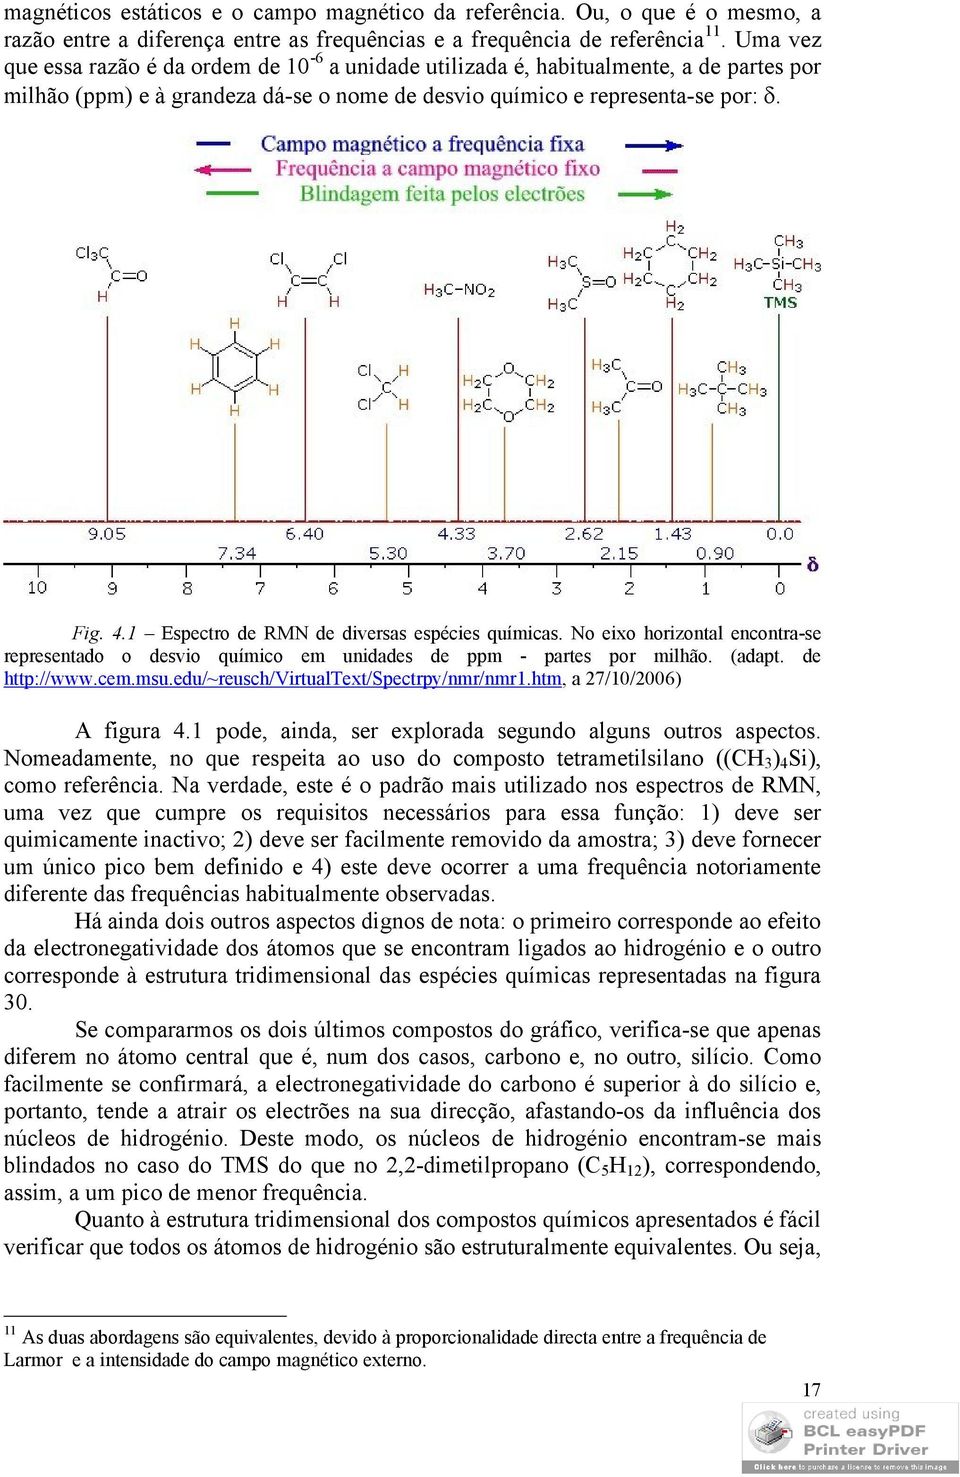 1 Espectro de RMN de diversas espécies químicas. No eixo horizontal encontra-se representado o desvio químico em unidades de ppm - partes por milhão. (adapt. de http://www.cem.msu.